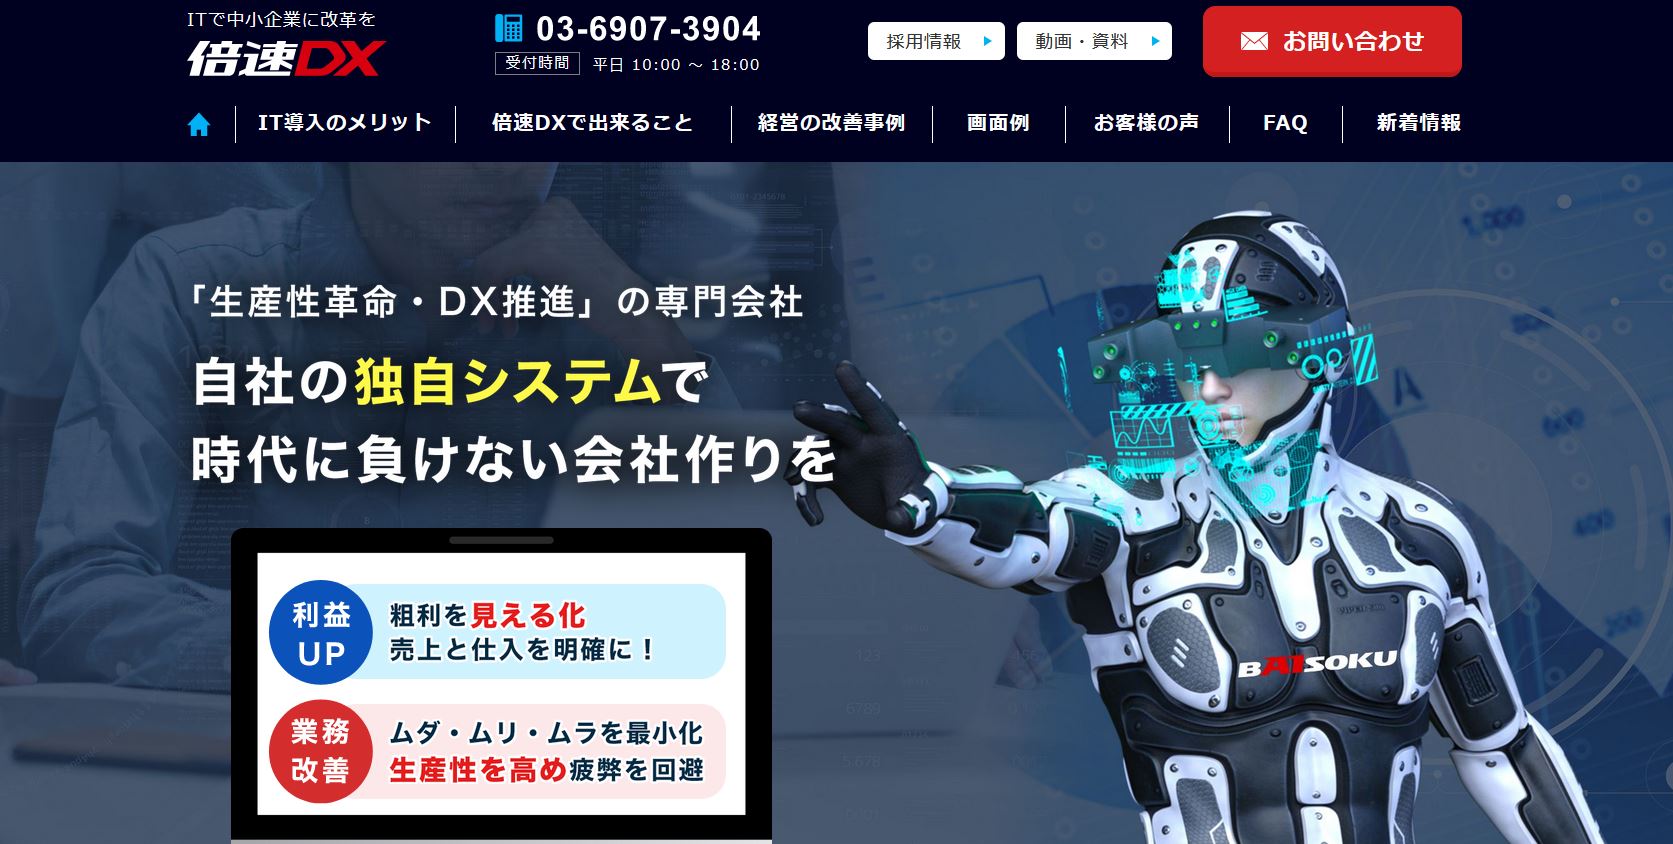 倍速DXのオフィシャルサイトです。